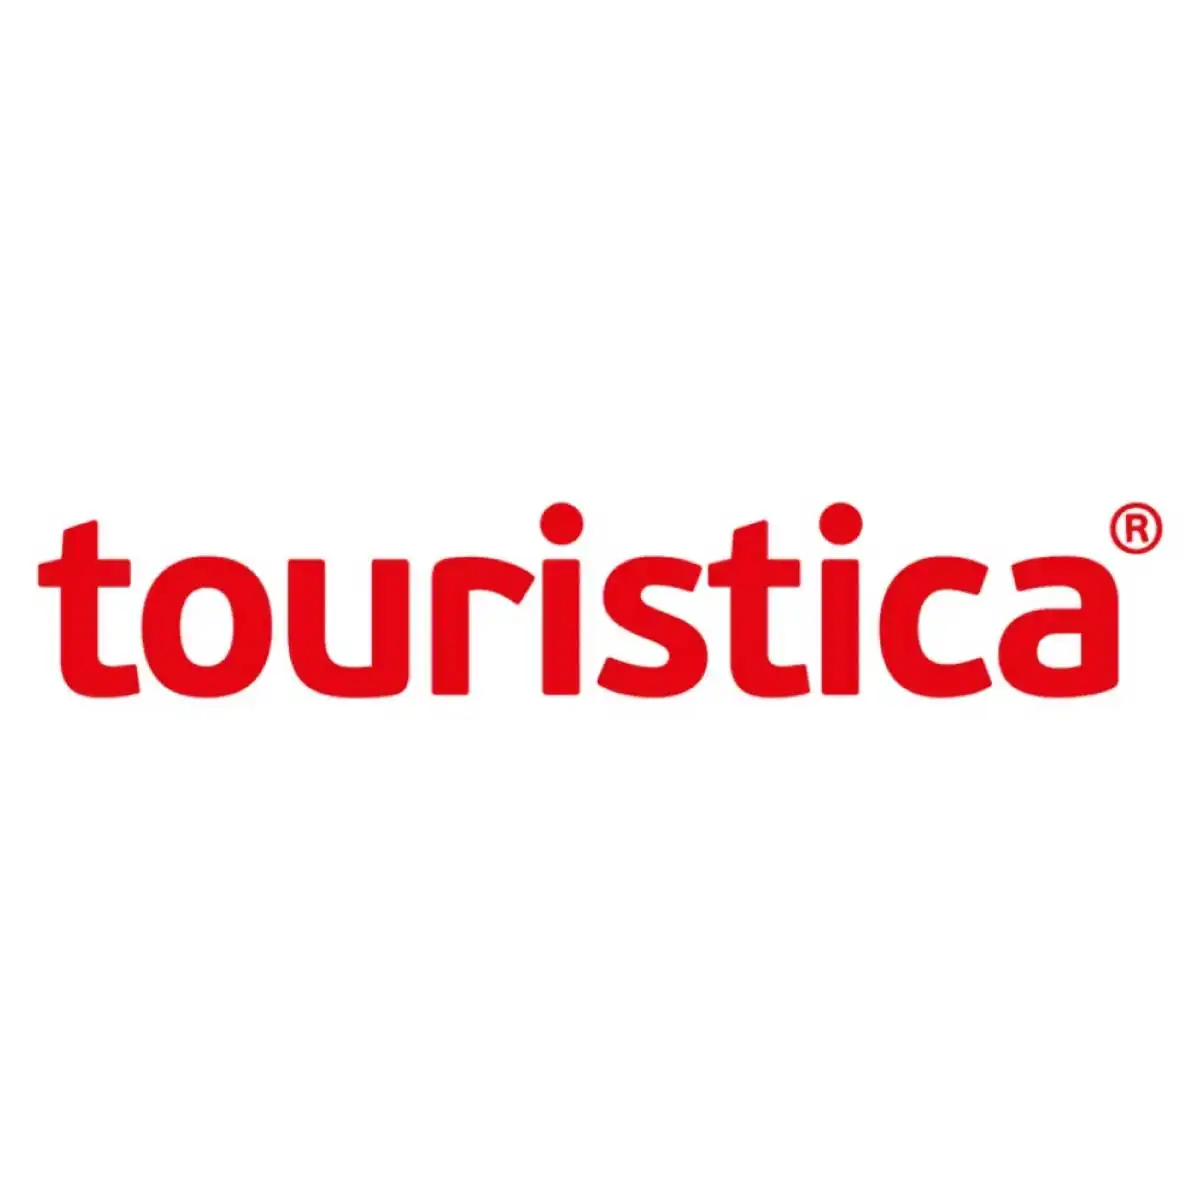 En İyi Yurtdışı Tur Şirketleri Touristica